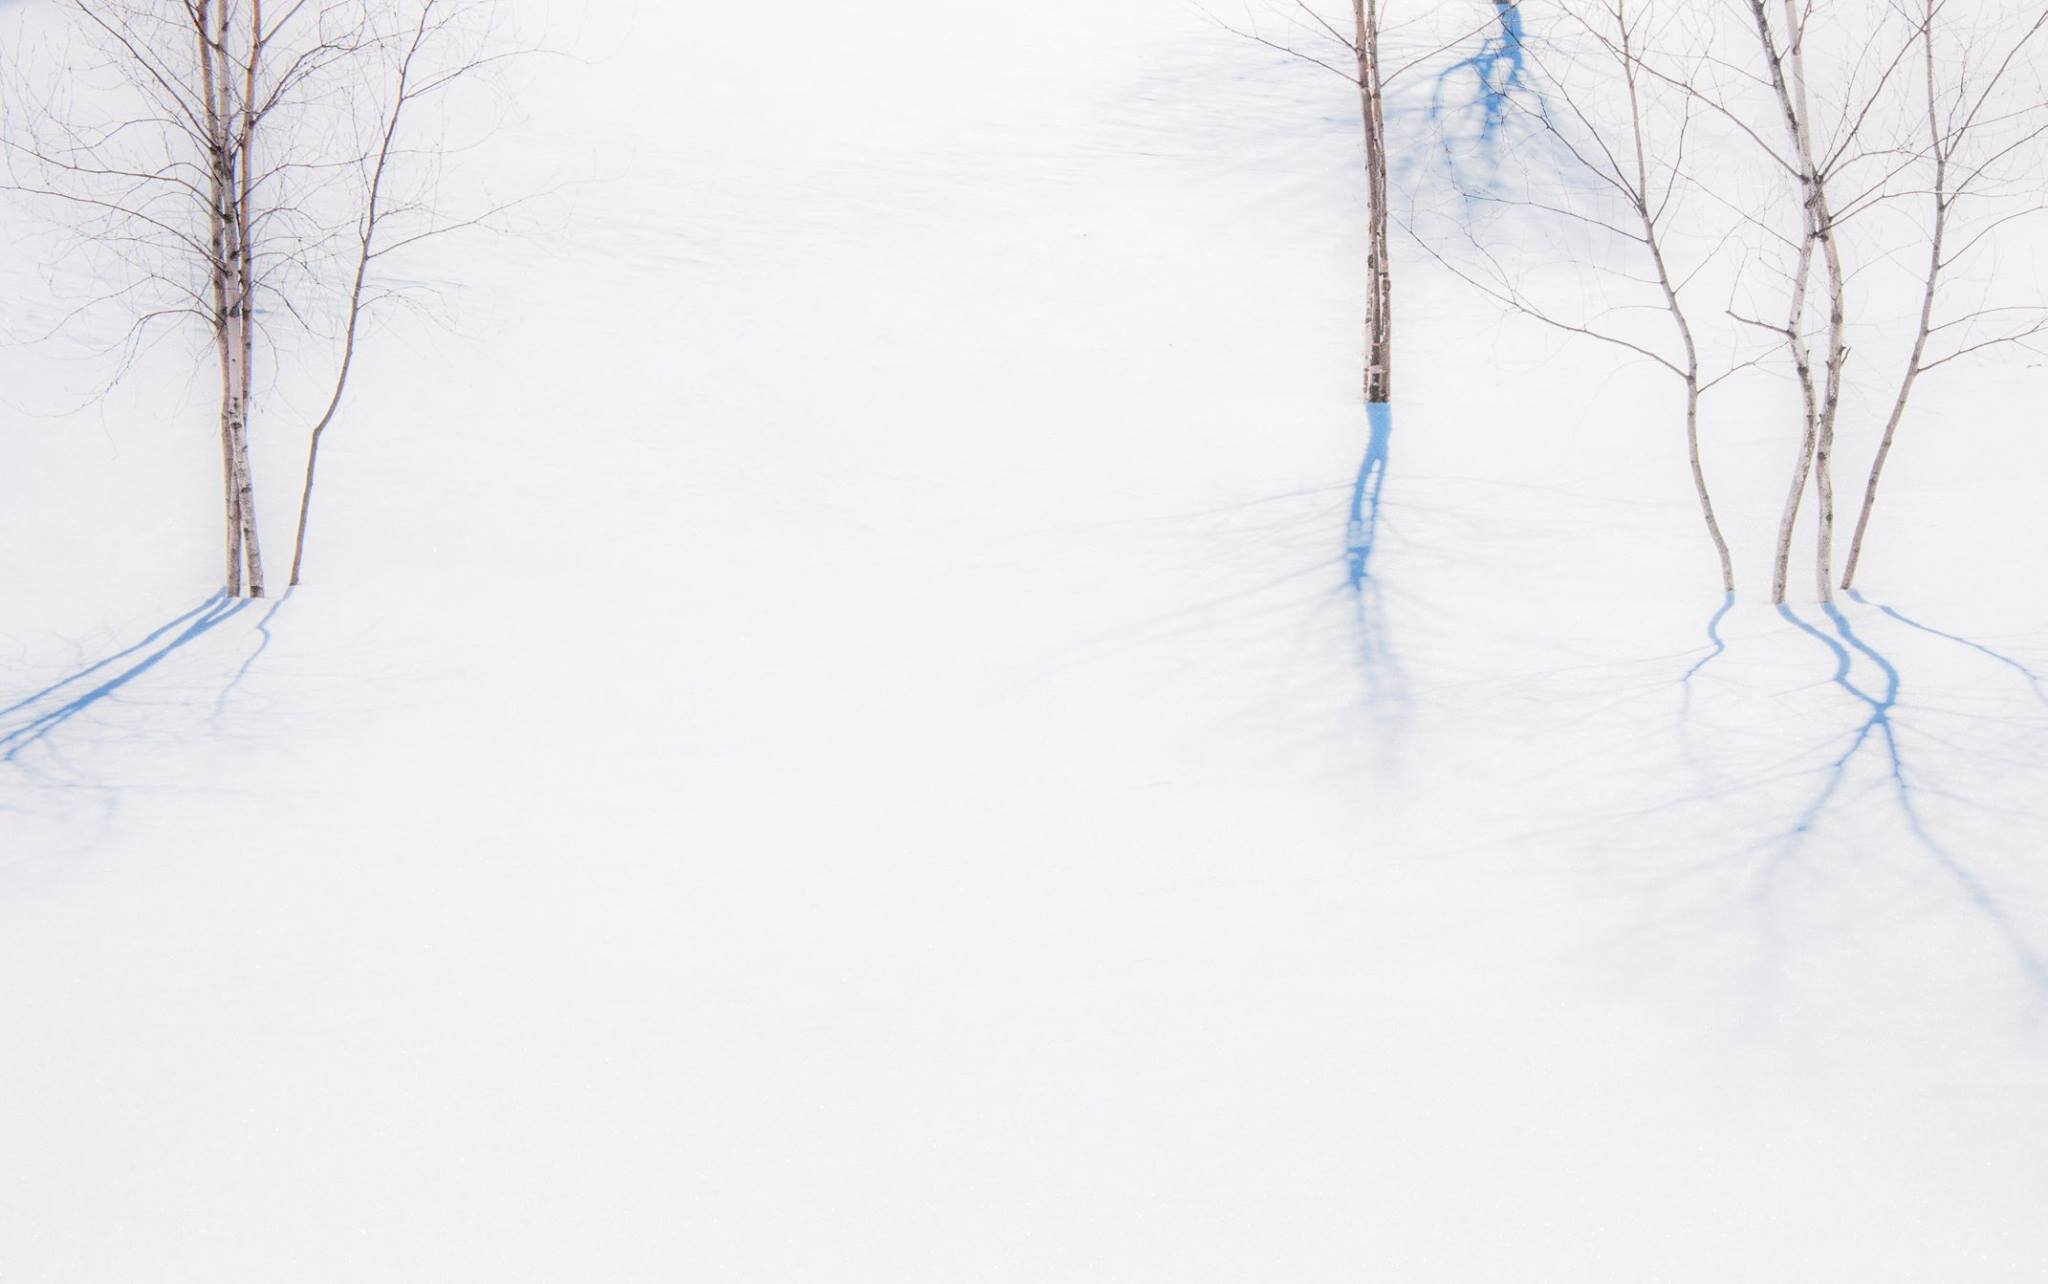 darling_snow_trees2.jpg